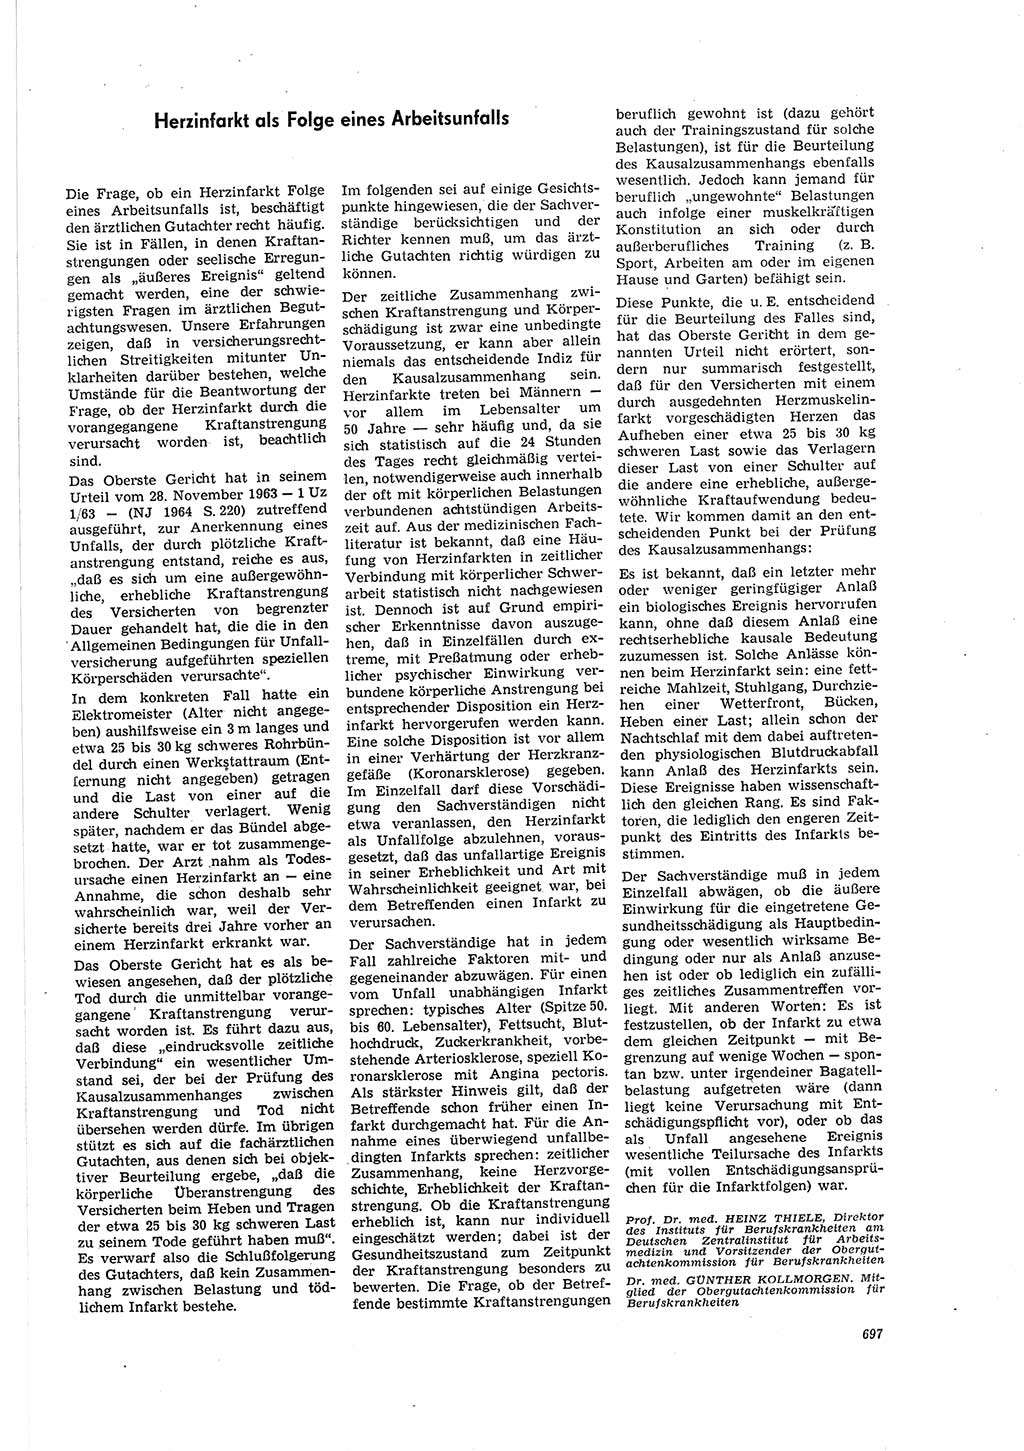 Neue Justiz (NJ), Zeitschrift für Recht und Rechtswissenschaft [Deutsche Demokratische Republik (DDR)], 20. Jahrgang 1966, Seite 697 (NJ DDR 1966, S. 697)